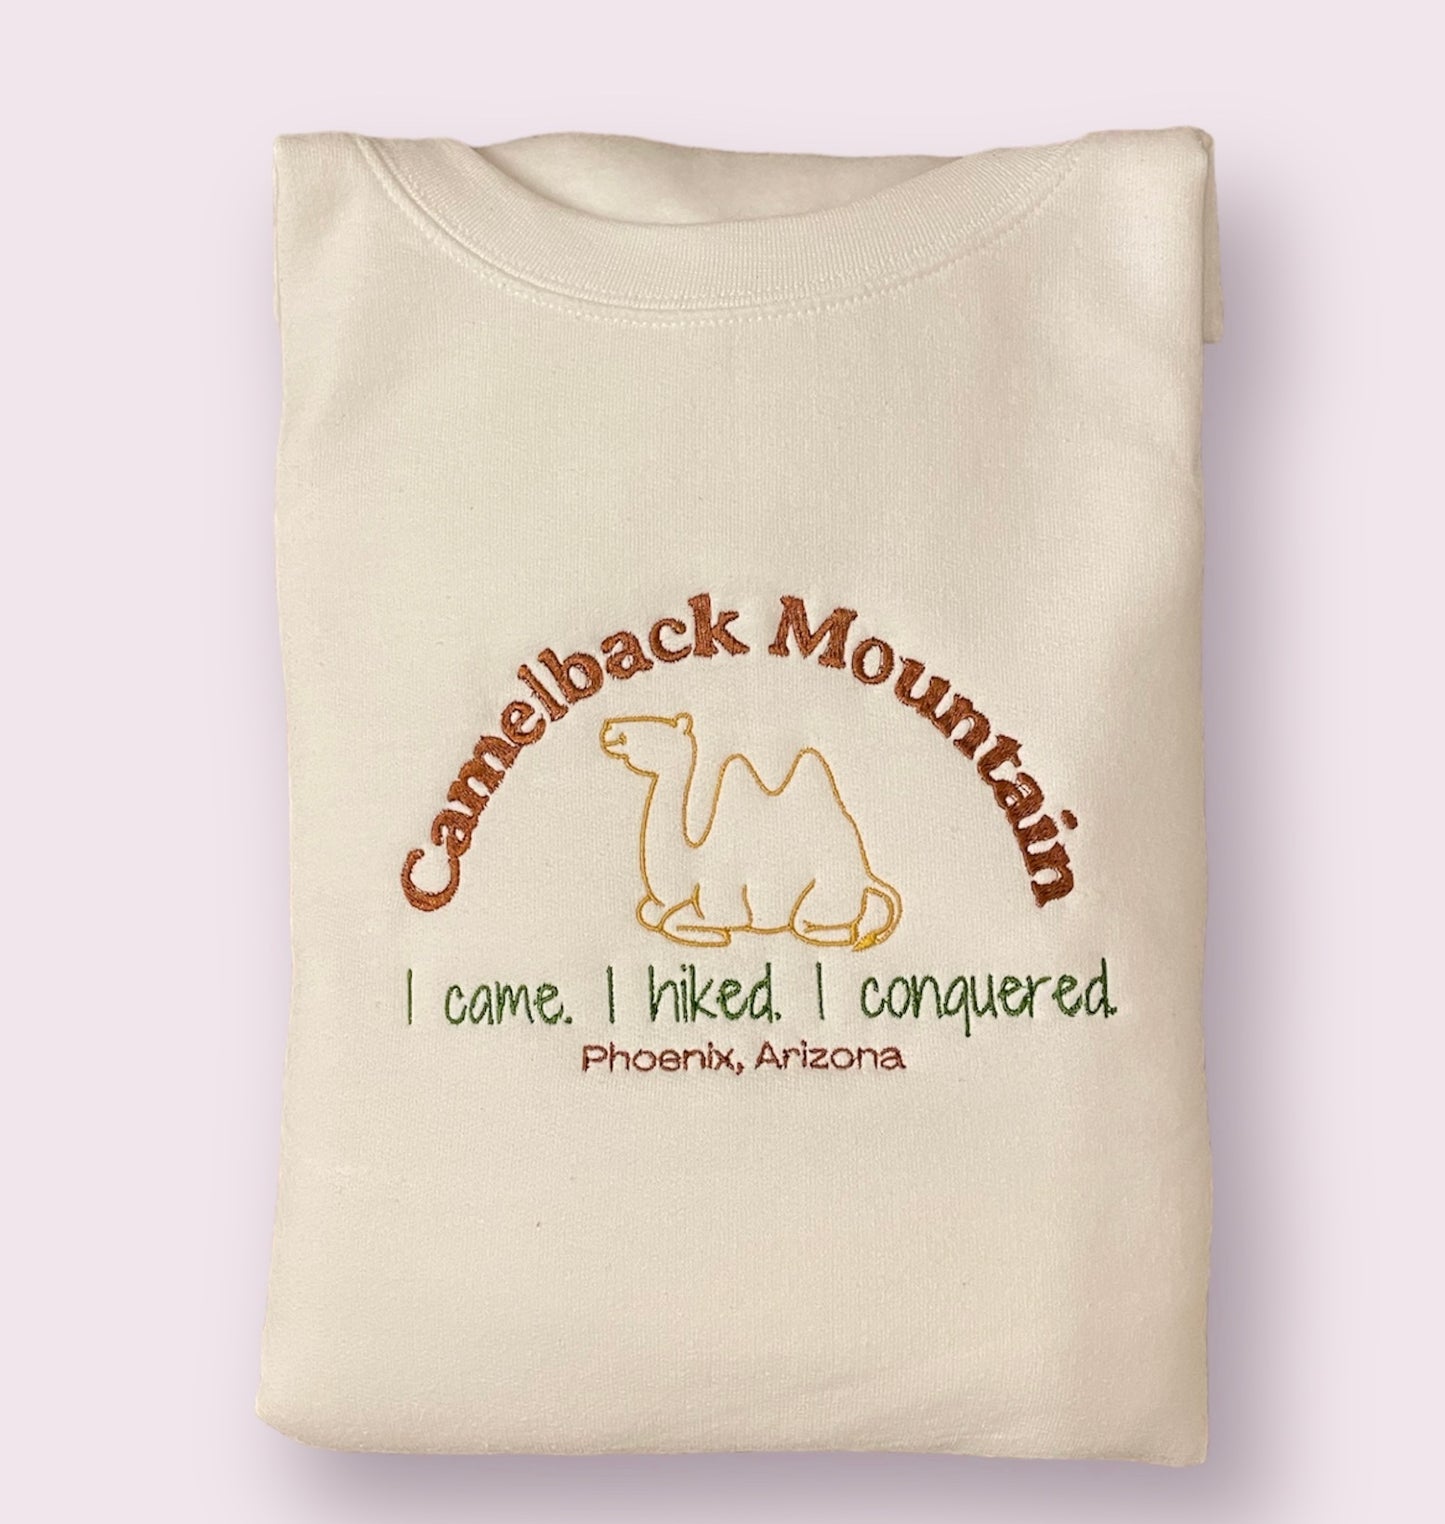 Camelback Mountain Crew Sweatshirt